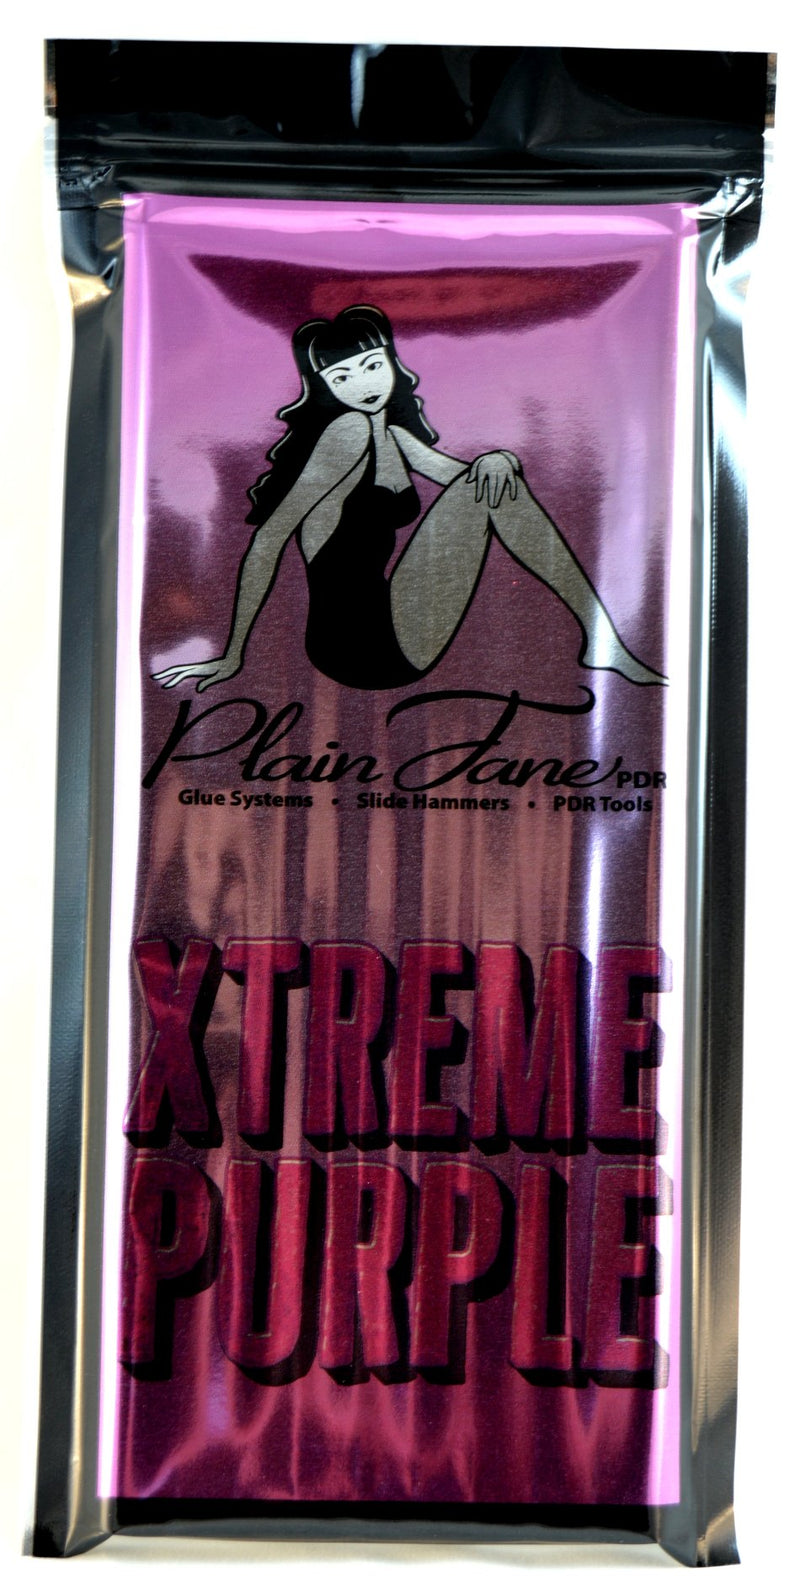 Xtreme Purple Hot PDR Glue - Plain Jane PDR